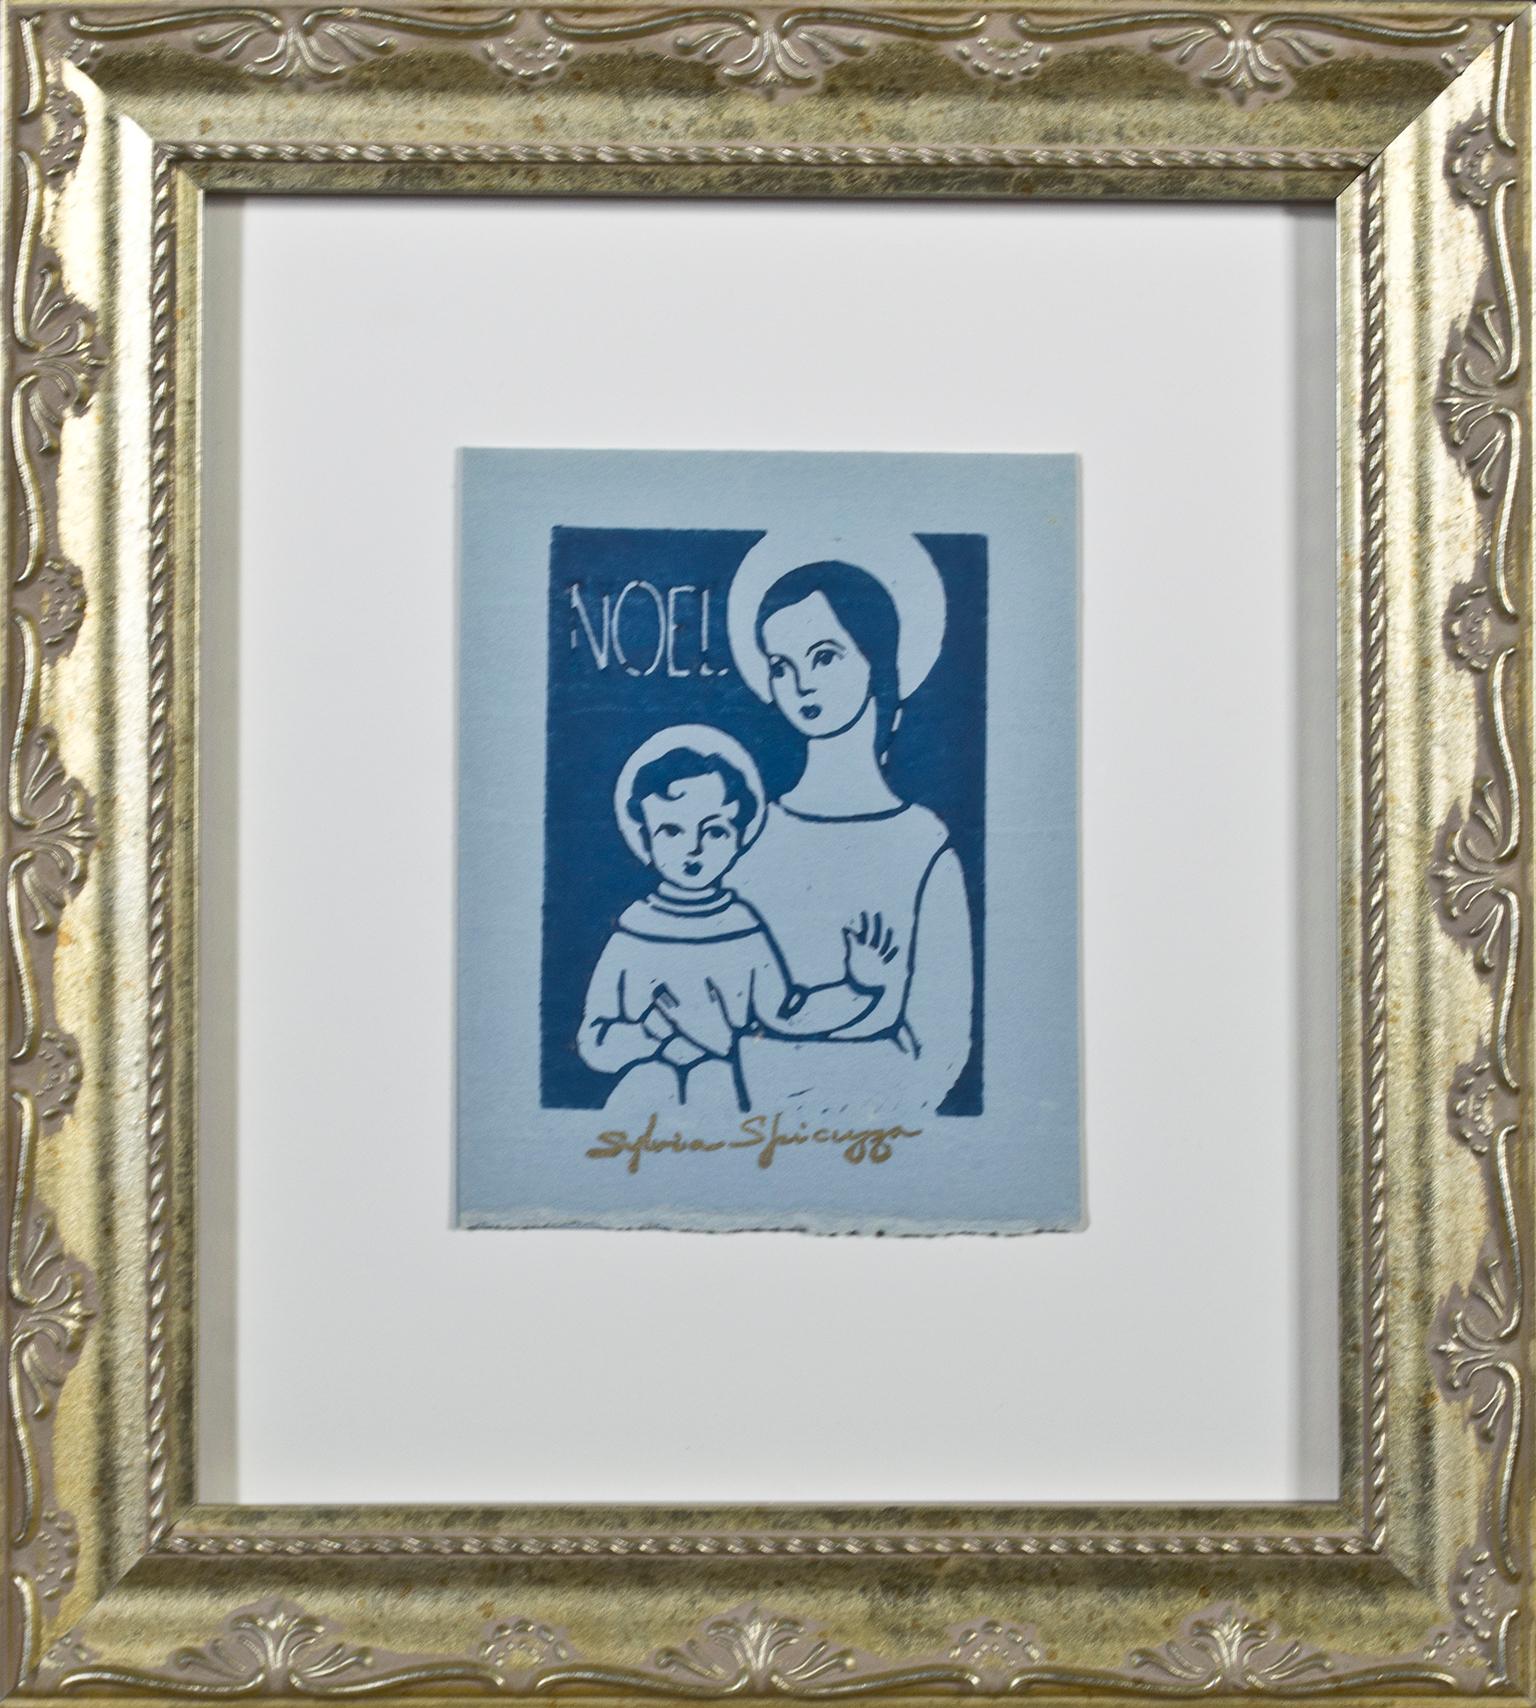 "Noel" ist ein Original-Linolschnitt auf blauem Papier von Sylvia Spicuzza. Die Künstlerin hat ihre Signatur unten in der Mitte aufgestempelt. Dieses Kunstwerk zeigt die Jungfrau Maria, die das Jesuskind hält. Beide Zahlen sind vereinfacht. 

5 1/4"